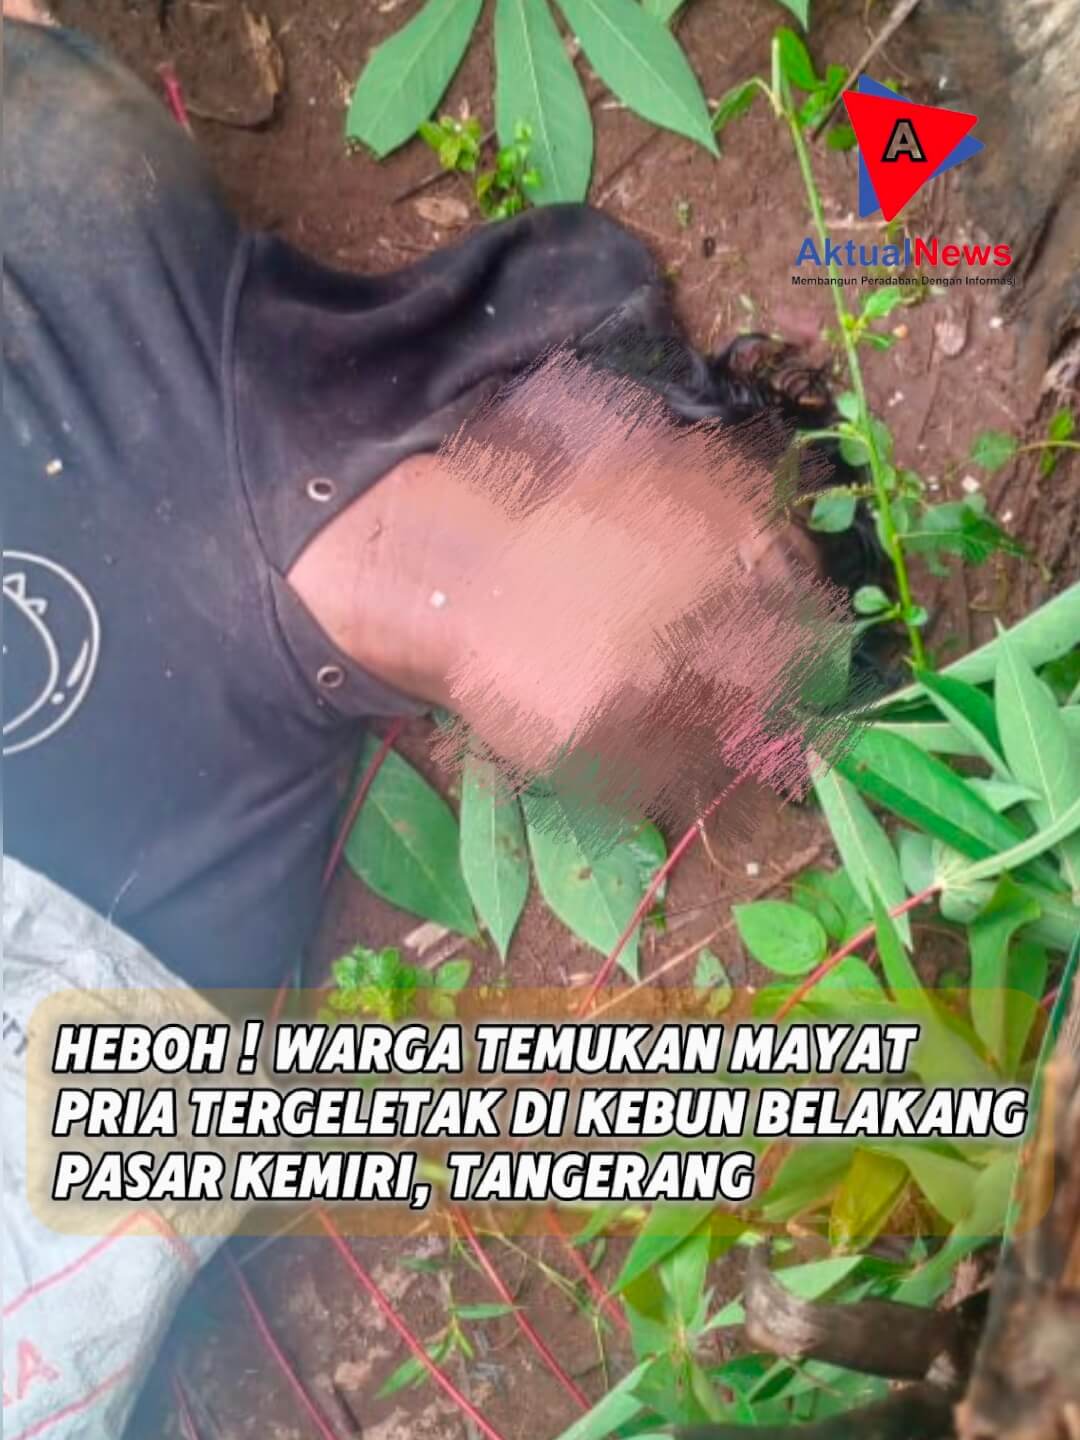 Heboh, Mayat pria ditemukan Tewas di Kebun Belakang Pasar Kemiri, Tangerang